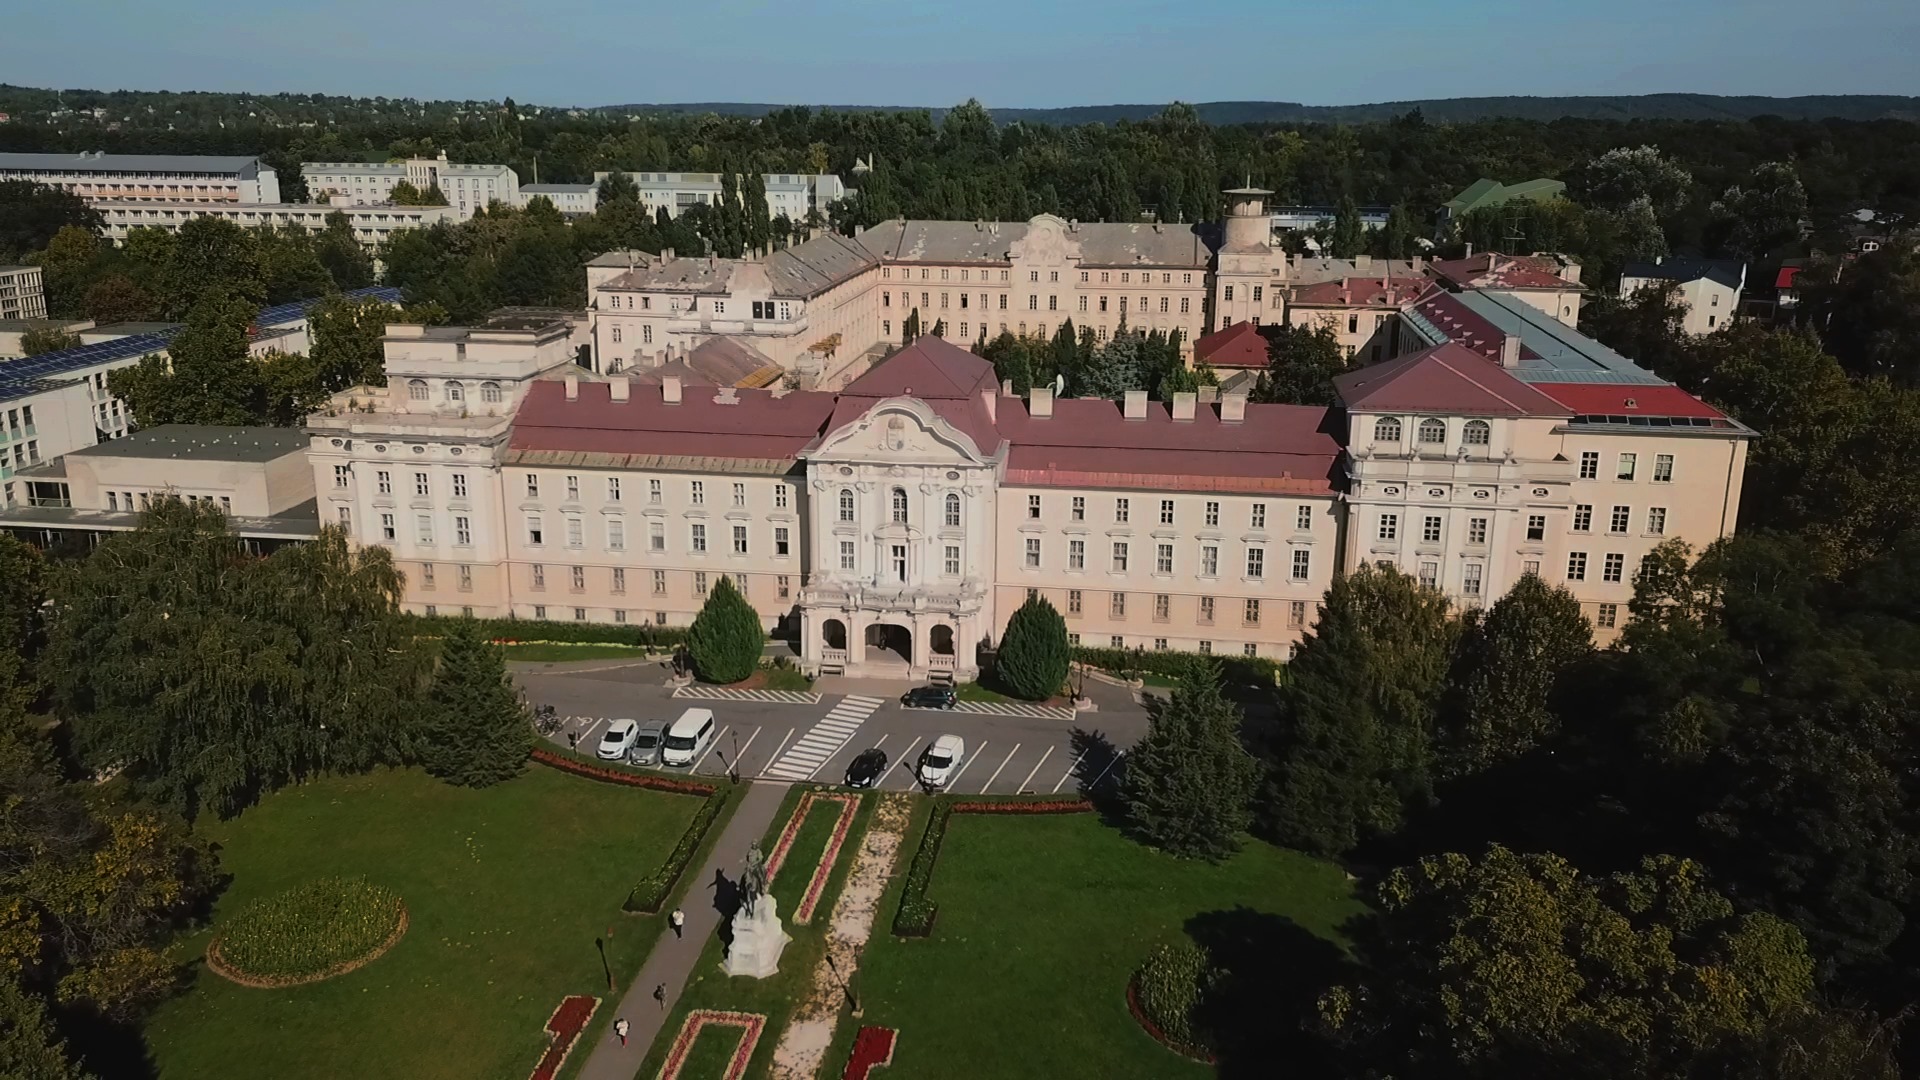 SZIE gödöllő Szent István University 農業匈牙利圖片